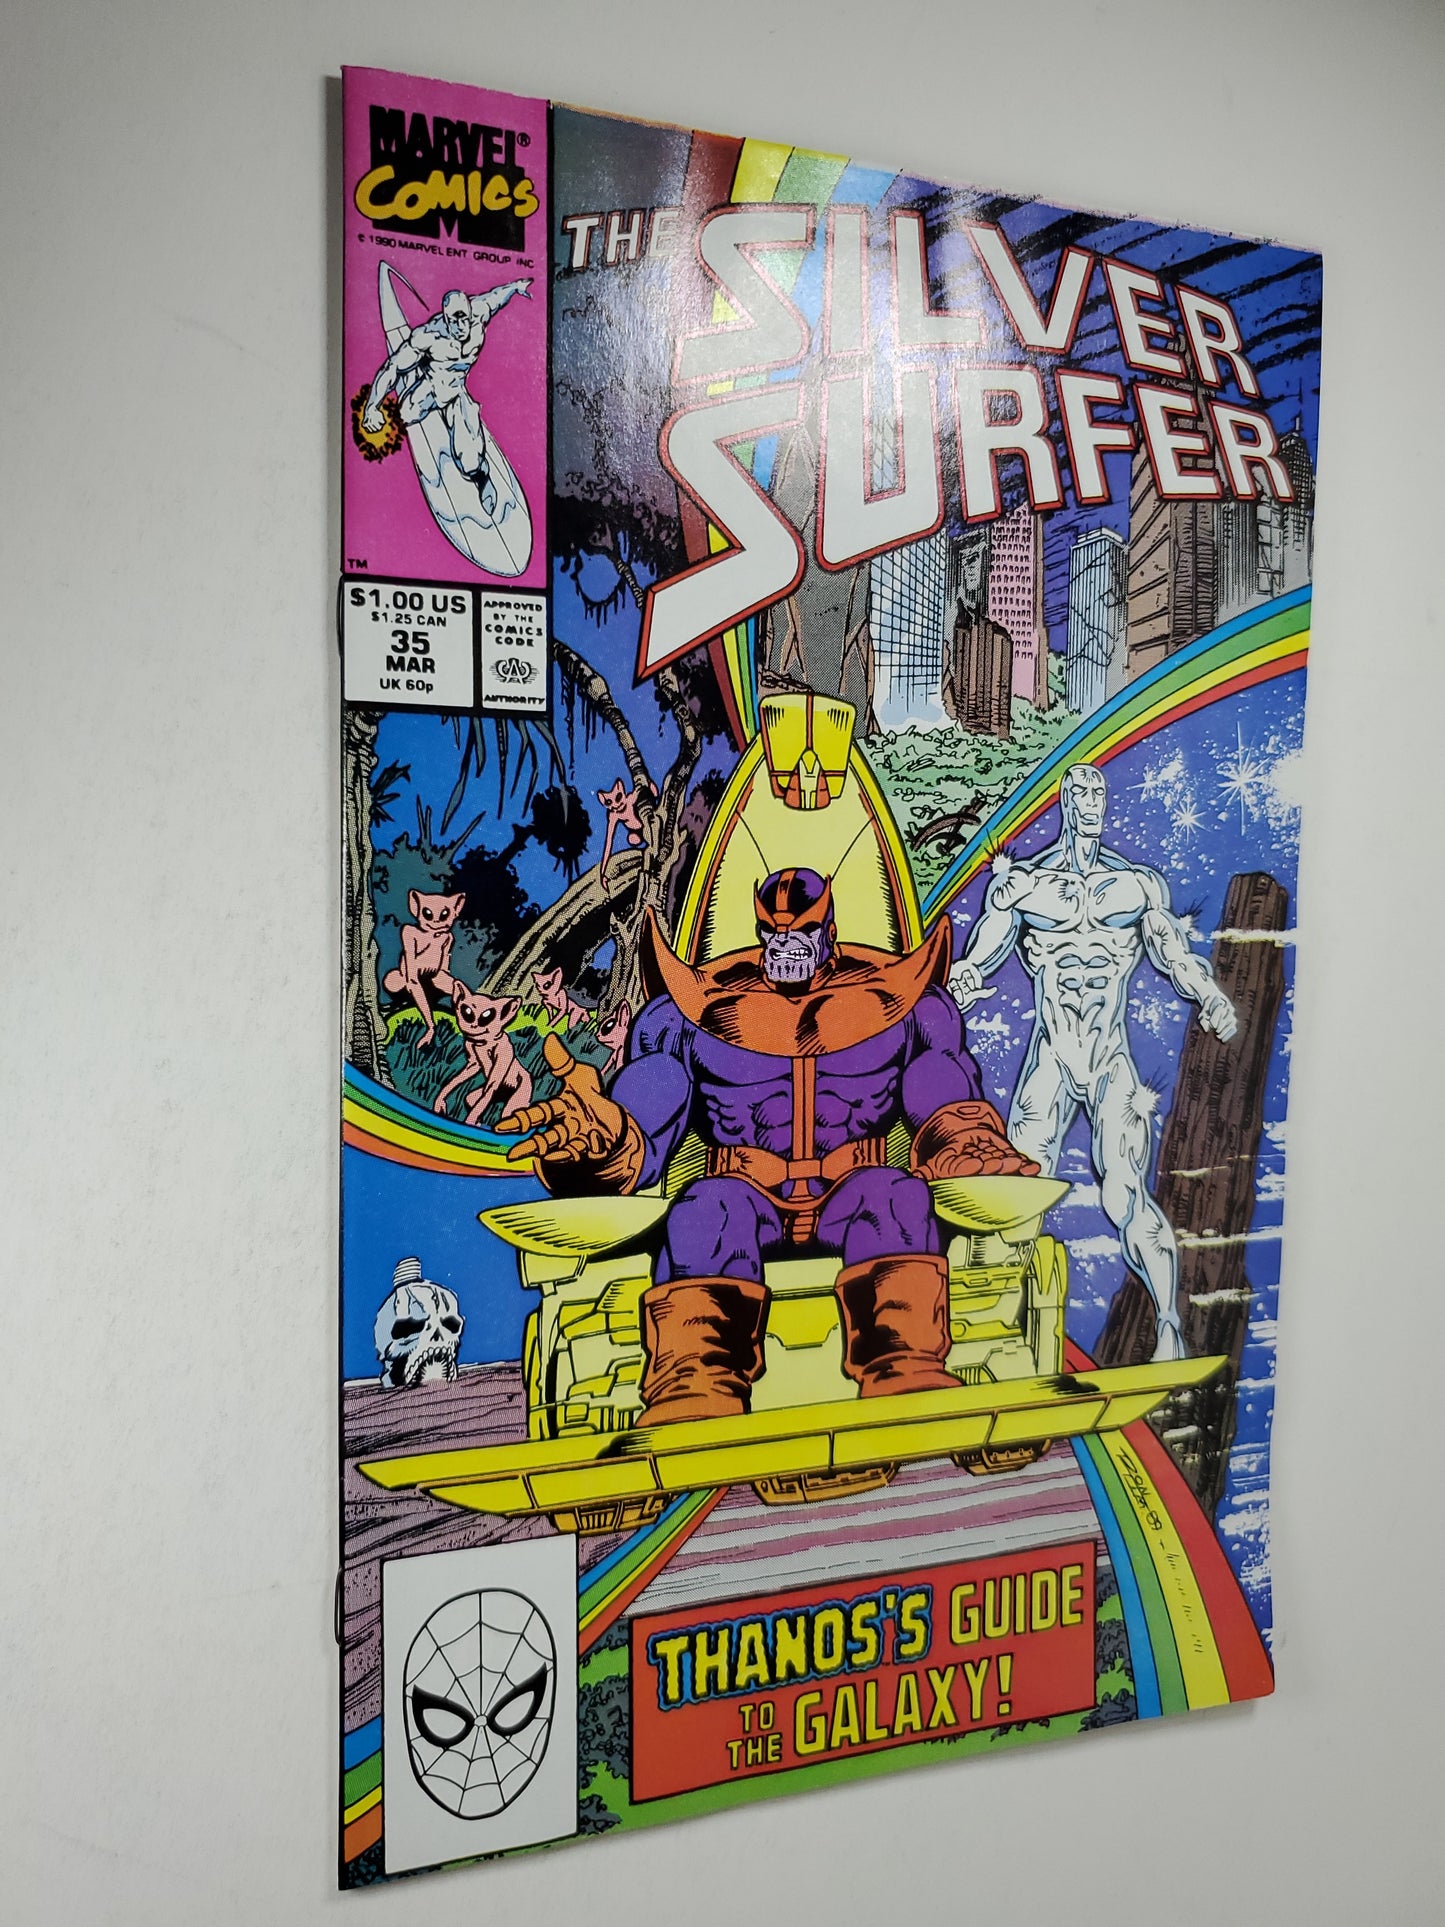 Marvel Silver Surfer Vol 3 #35